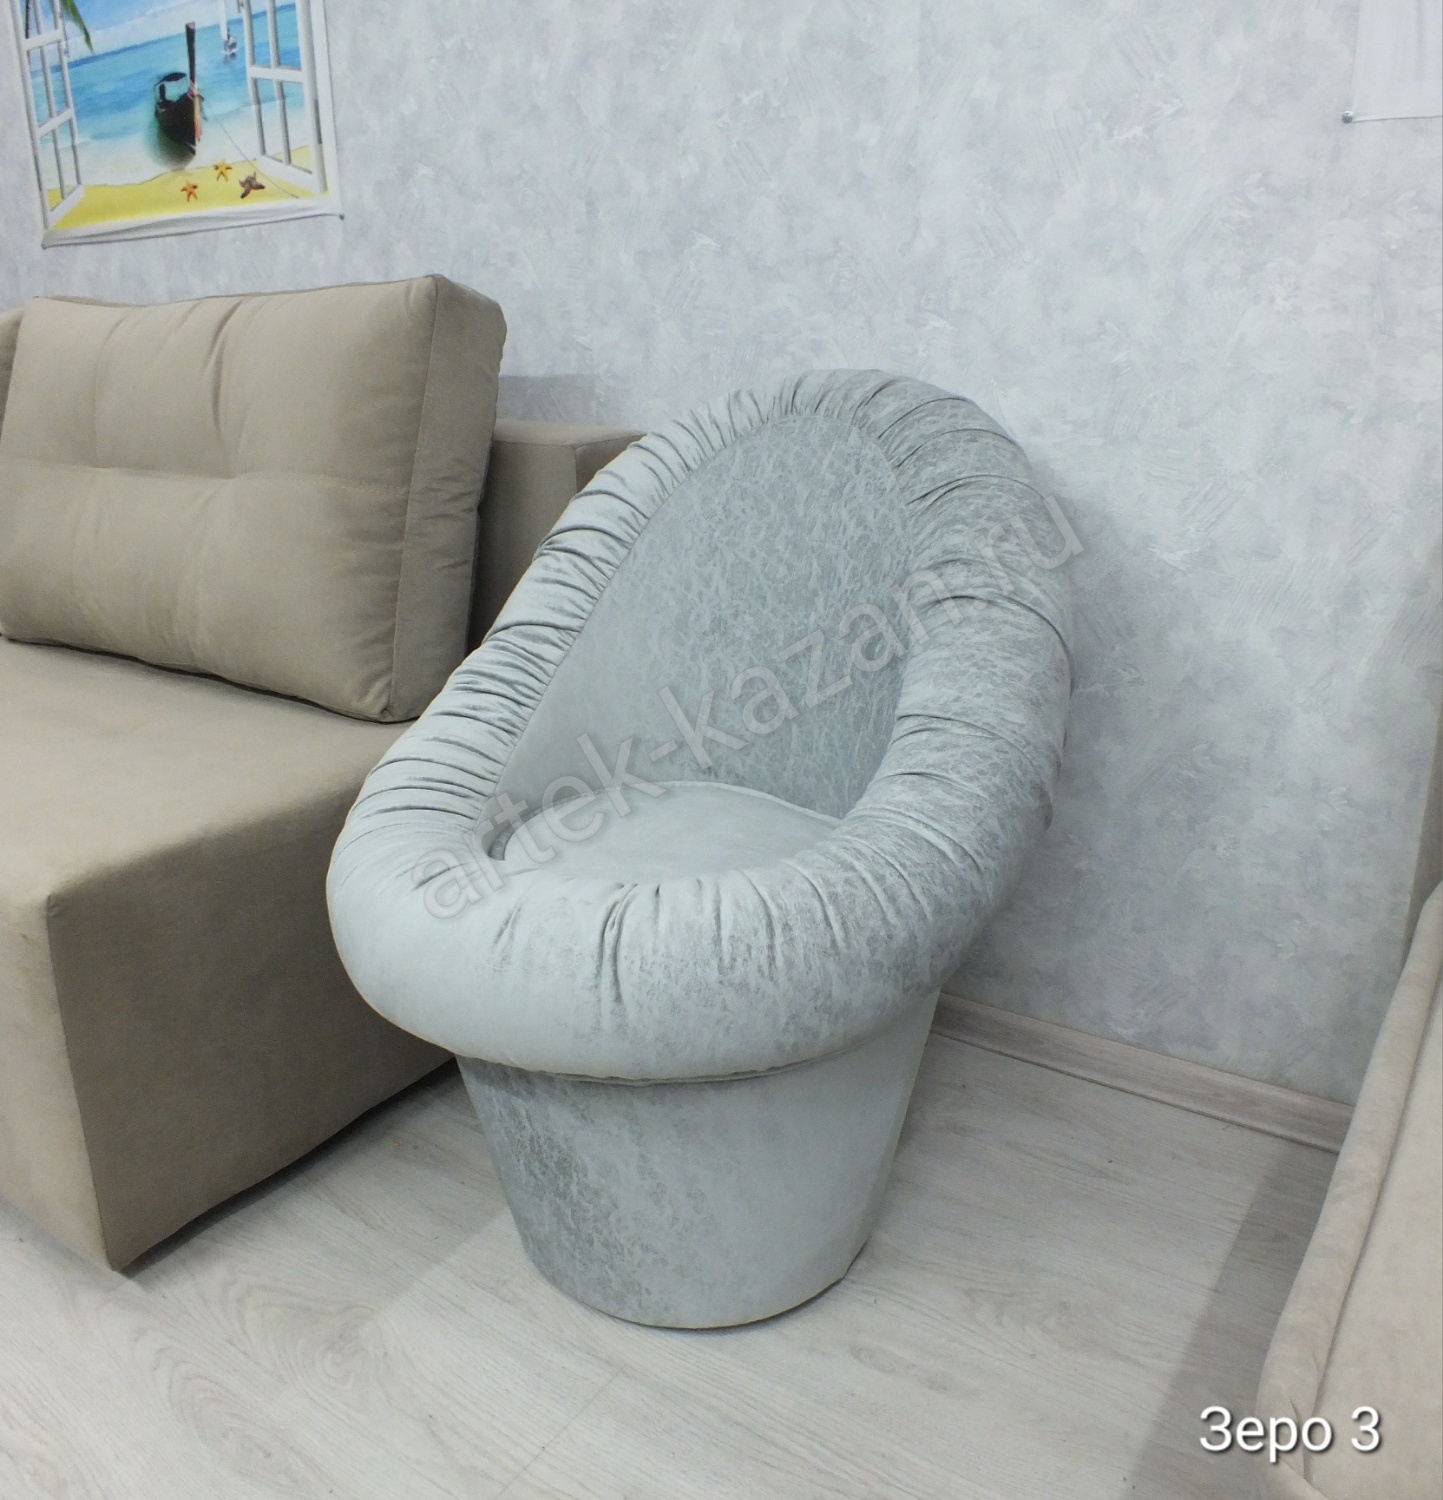 Кресло-пуф, фото 1. Купить недорогой диван по низкой цене от производителя можно у нас.